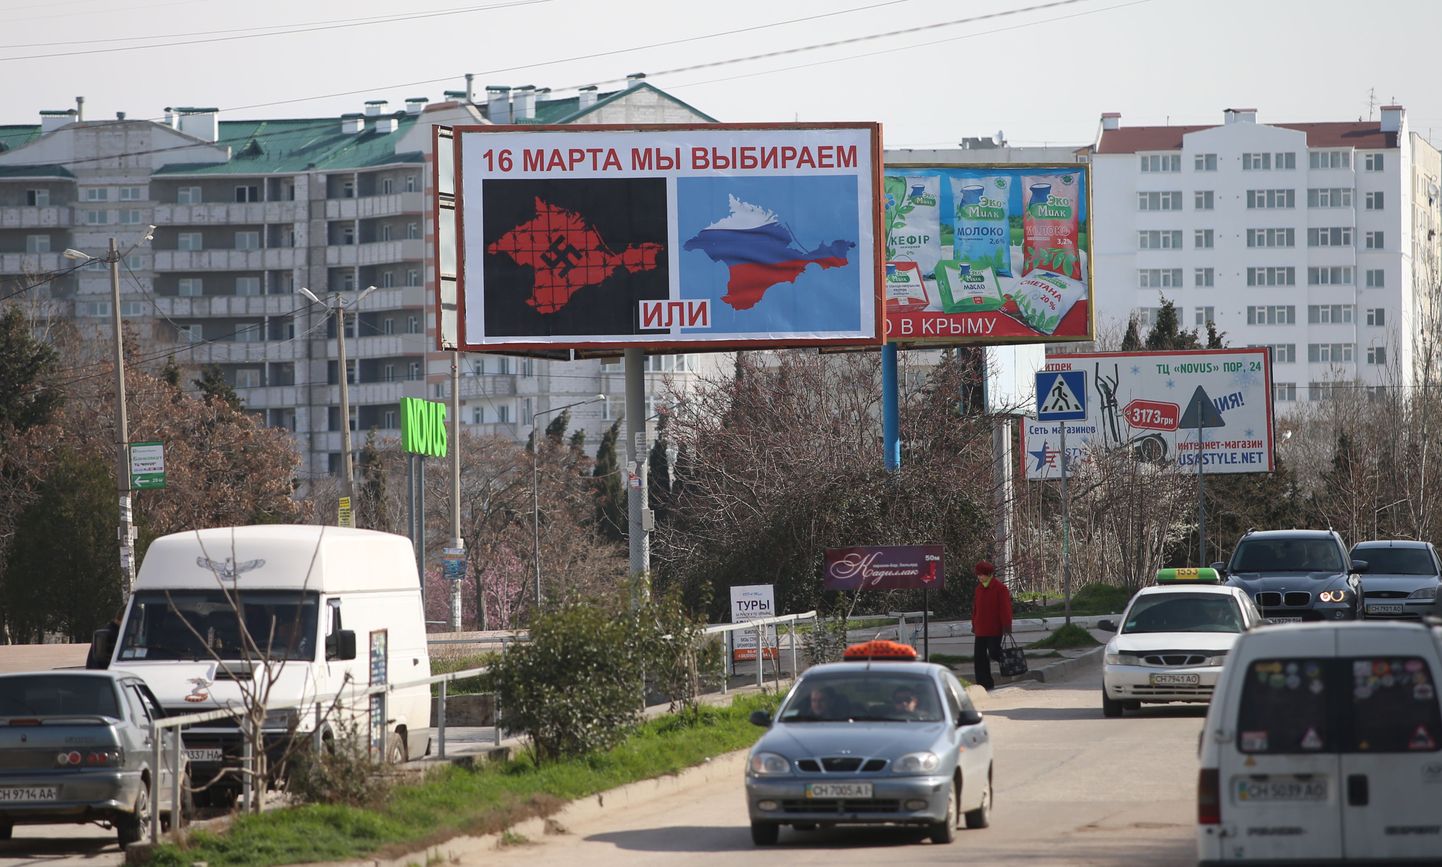 Plakat, mis pakub referendumi eel välja kaks võimalikku valikut, Sevastopolis.